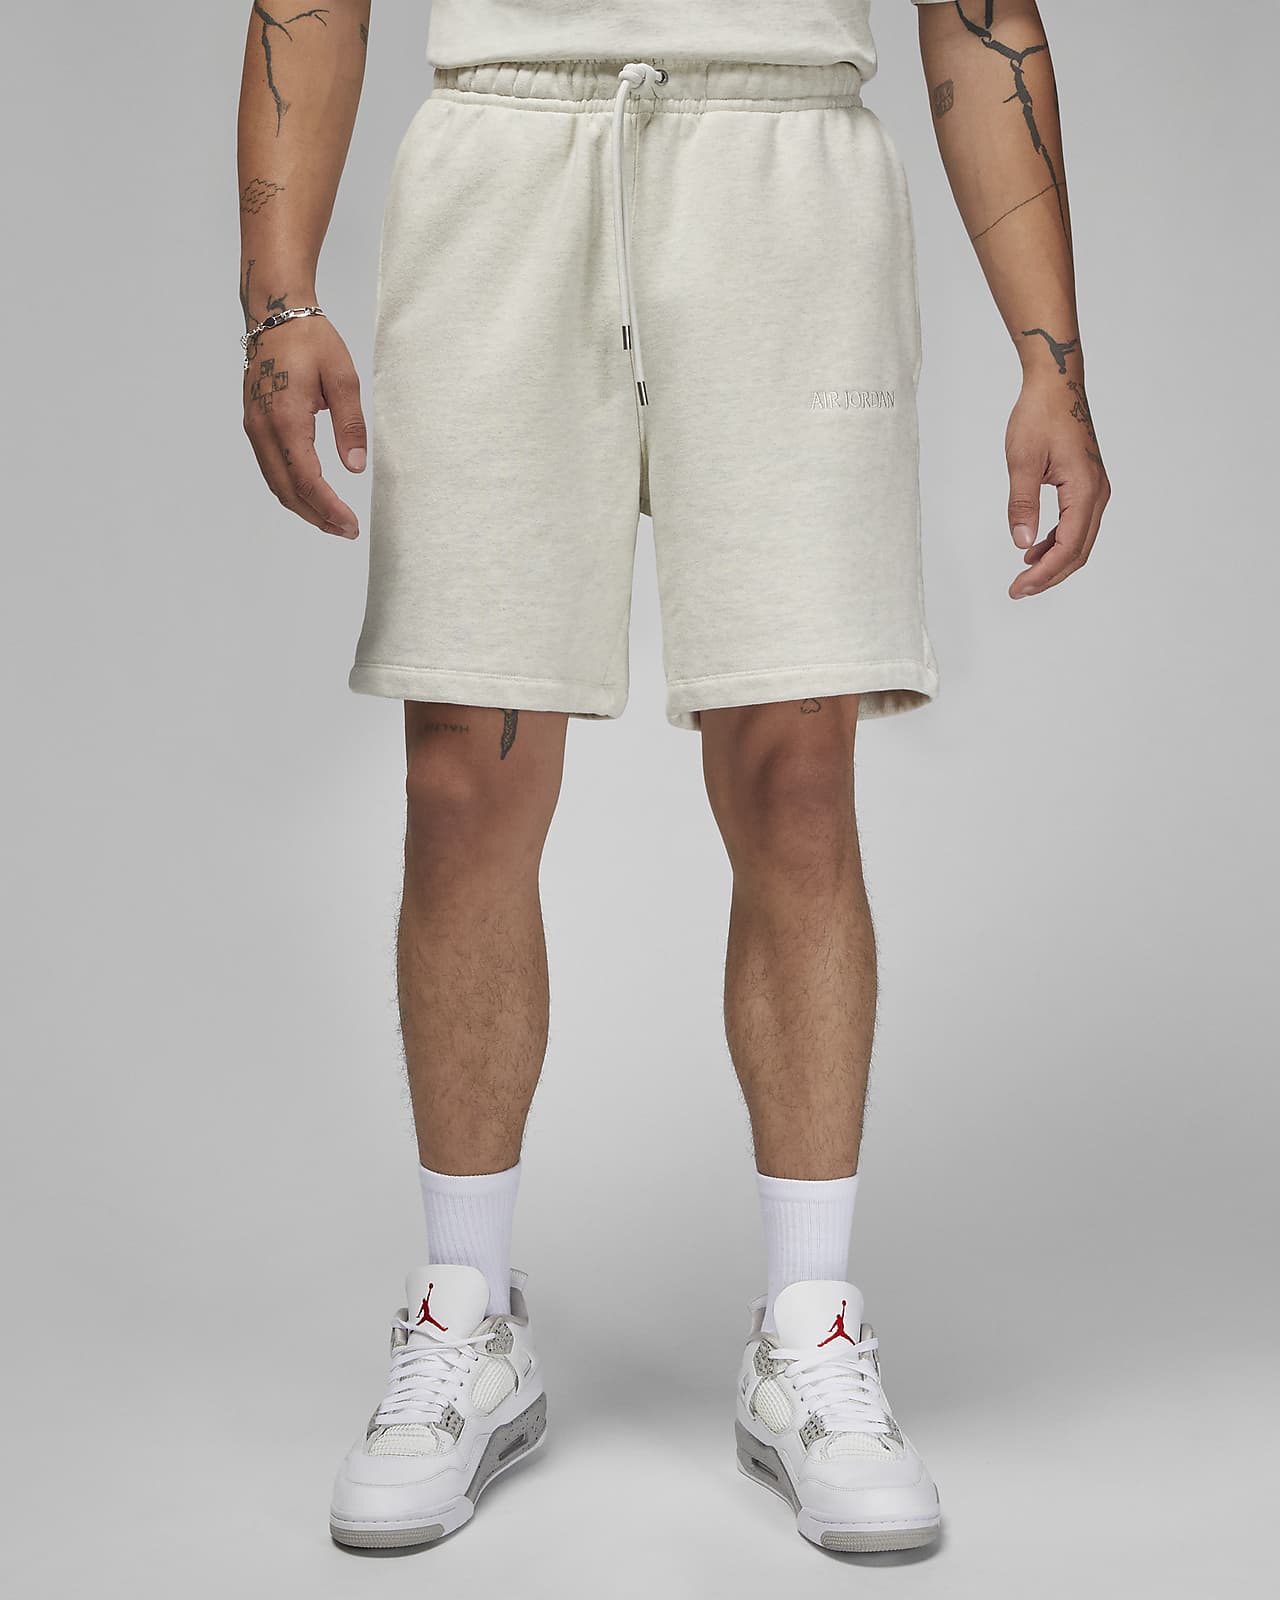 Shorts in fleece Air Jordan Wordmark – Uomo